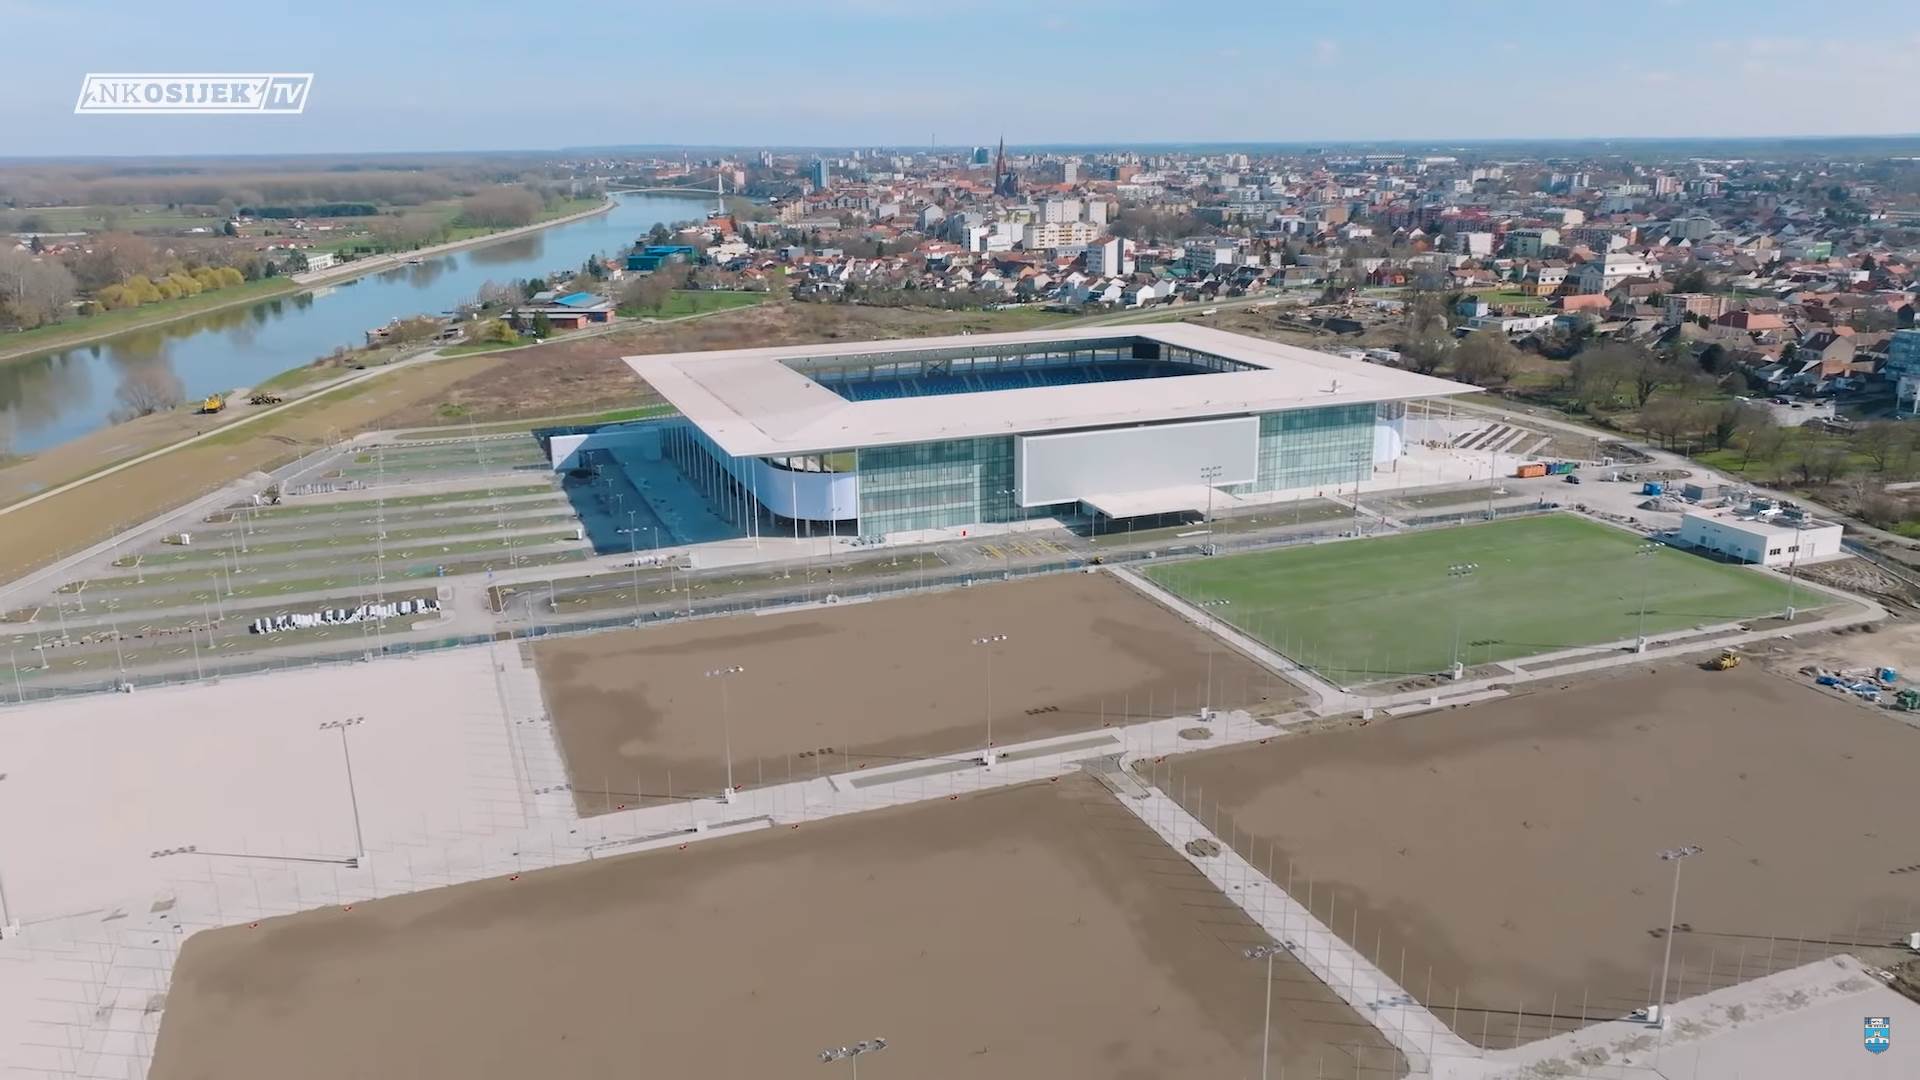  Najmoderniji stadion u Hrvatskoj Pampas Osijek 